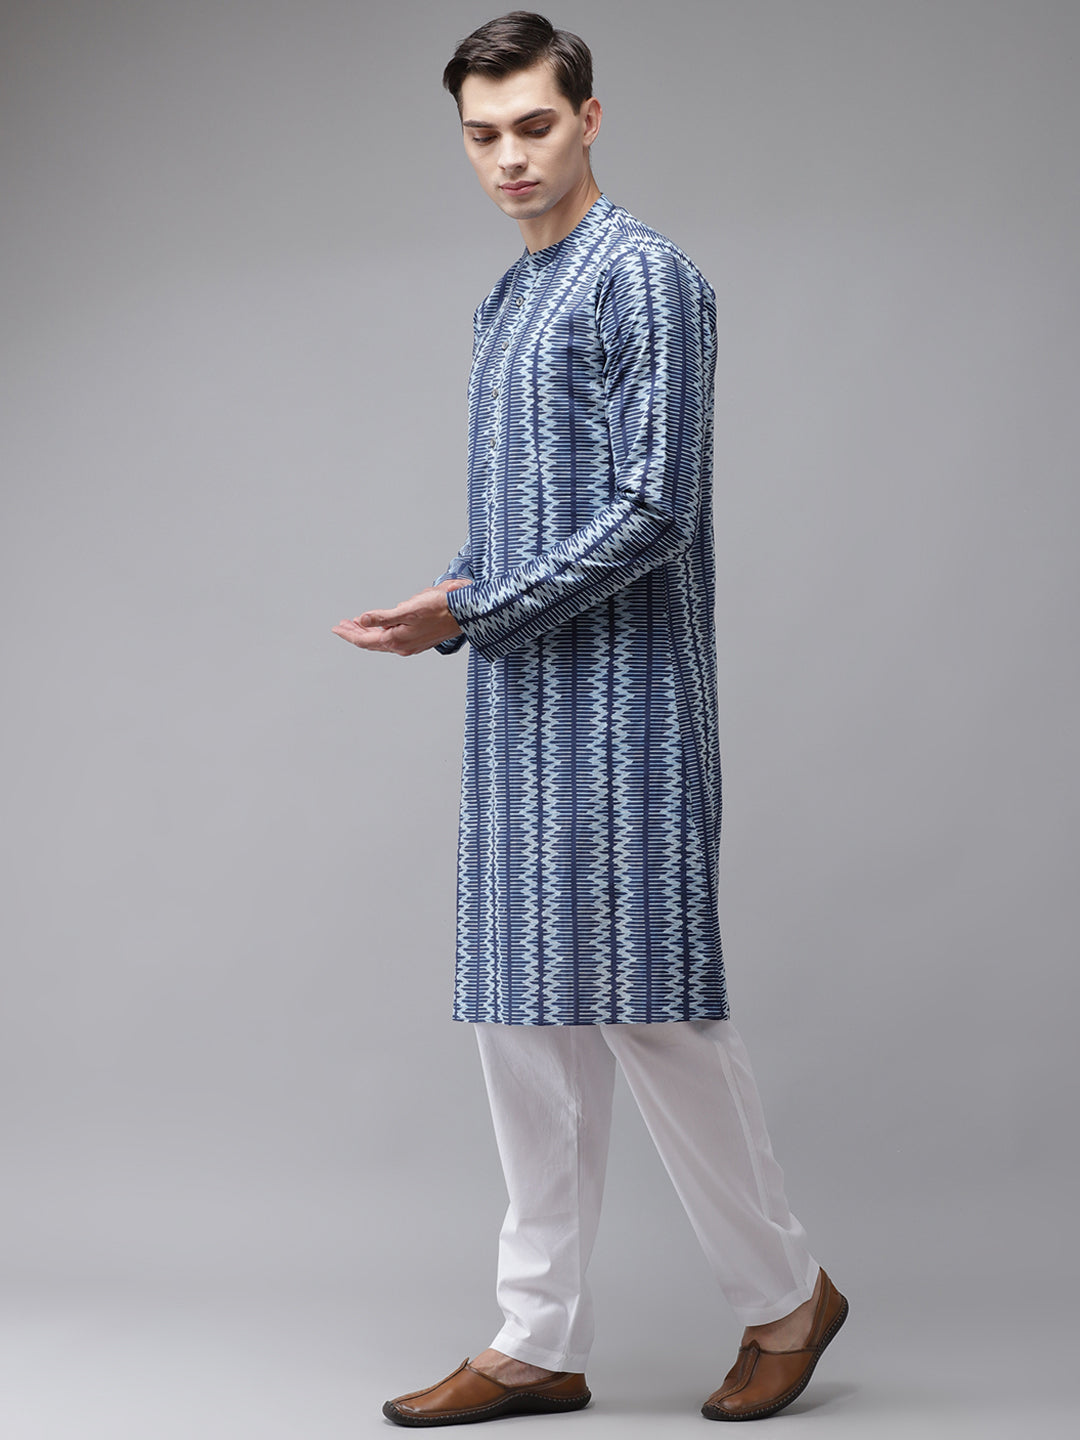 Buy Men's Blue Cotton Printed Kurta Pajama Set Online - Front